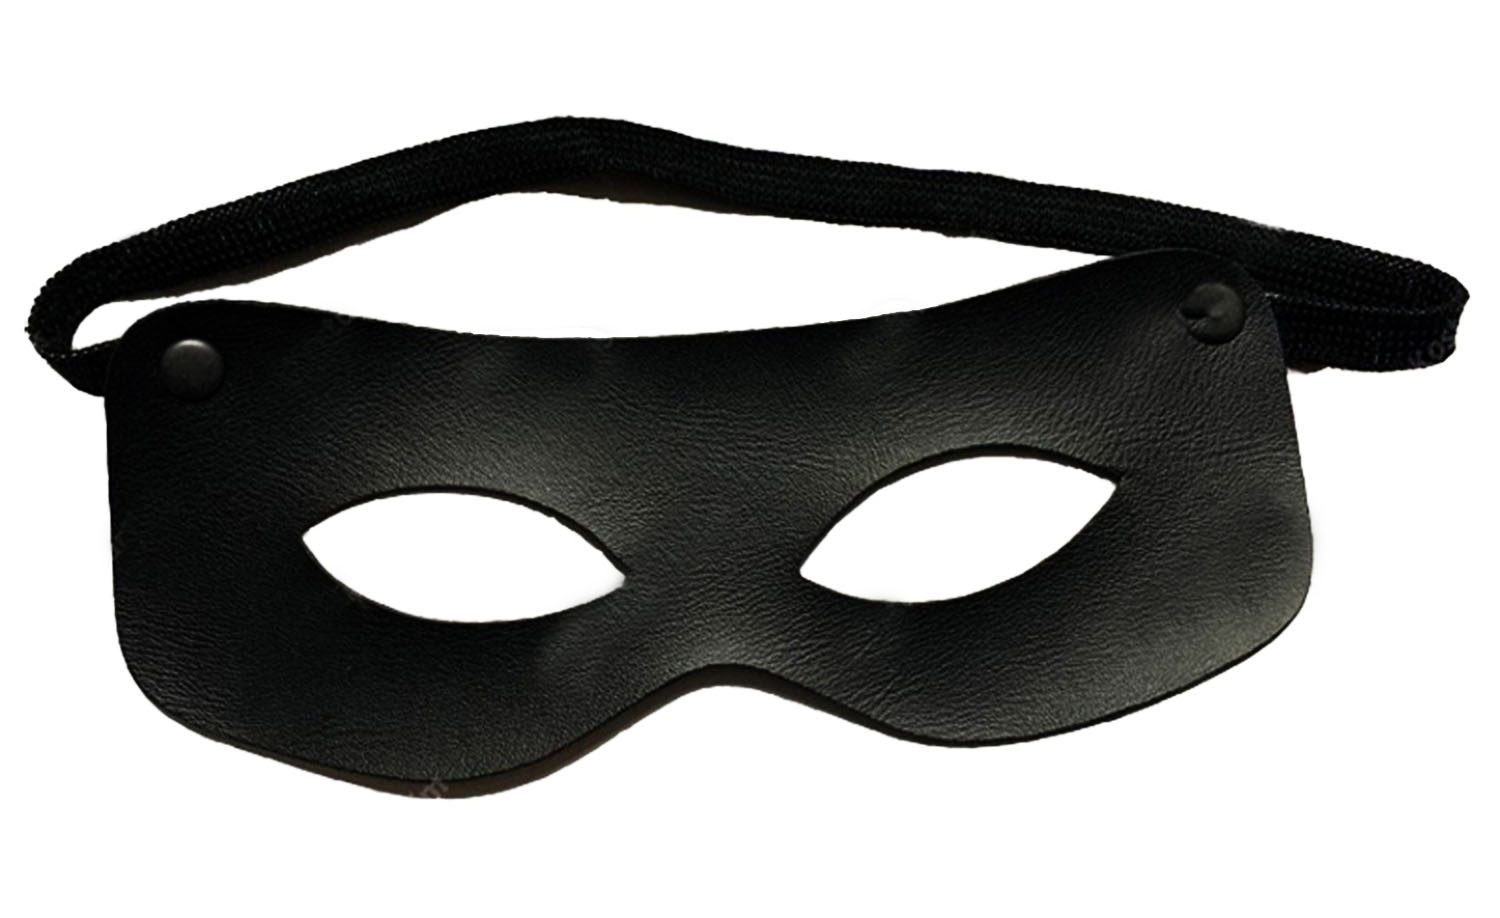 Siyah Renk Vinleks Deri Malzemeden İmal Zorro Maskesi Hırsız Maskesi 7x16 Cm (4172)